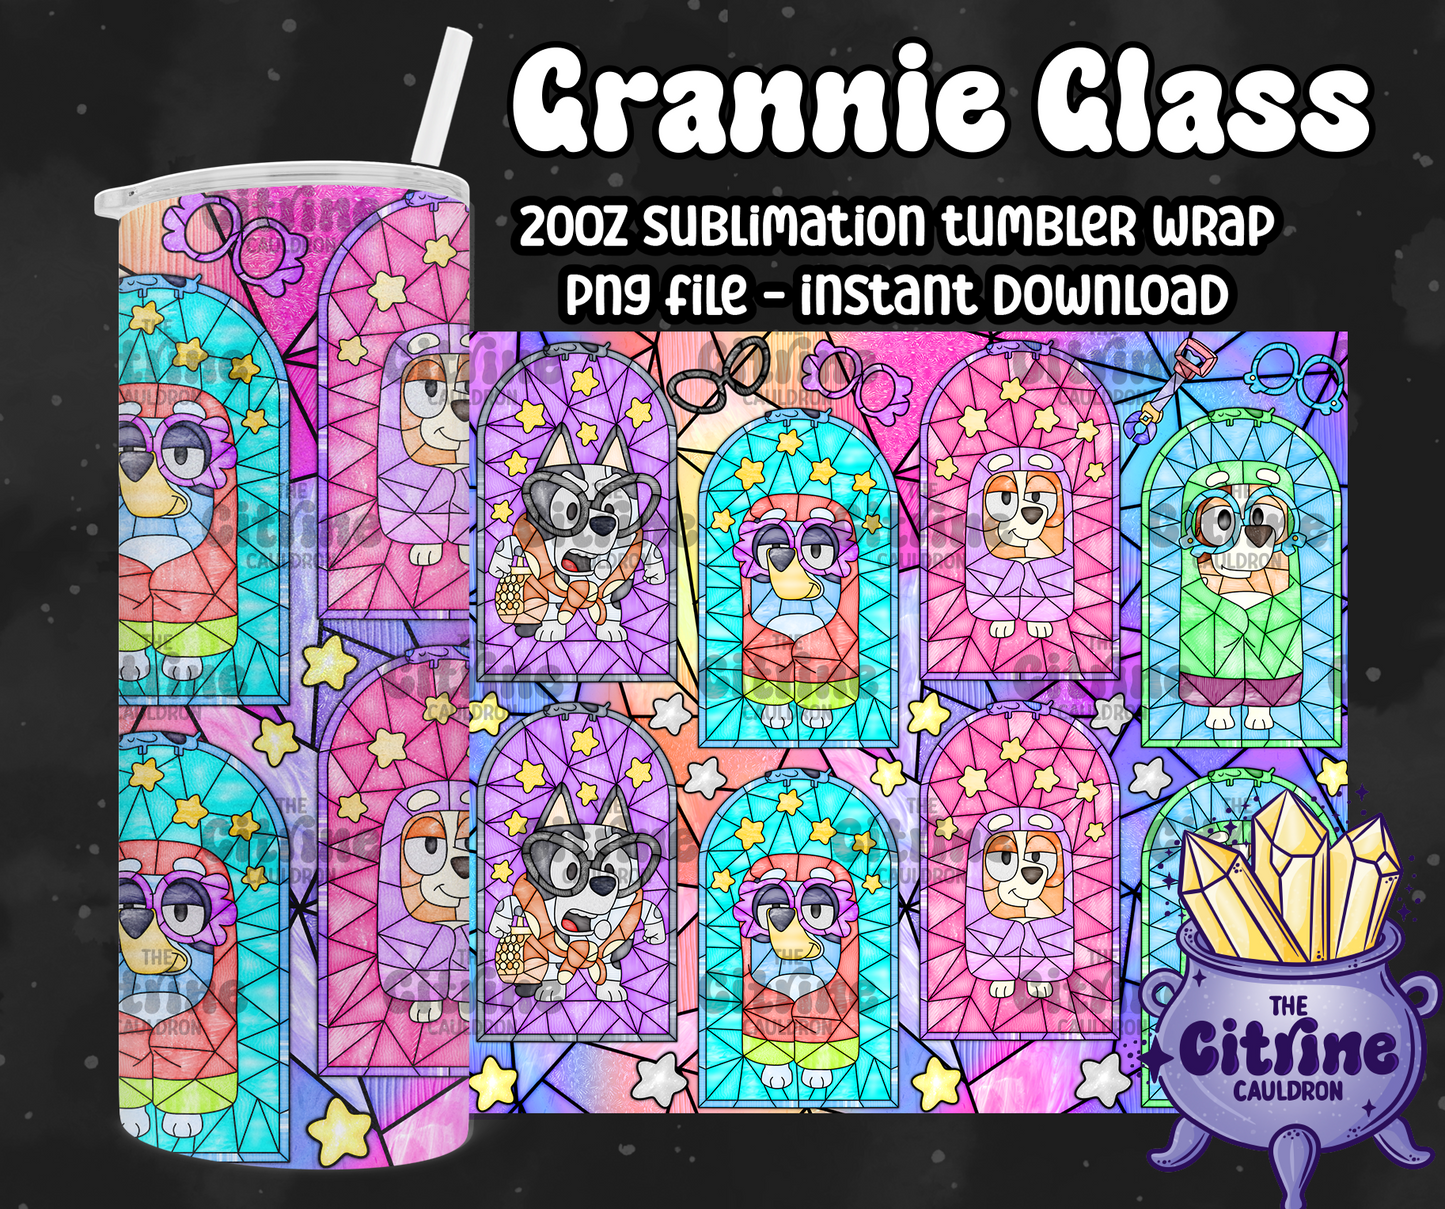 Grannie Glass - PNG Wrap for Sublimation 20oz Tumbler